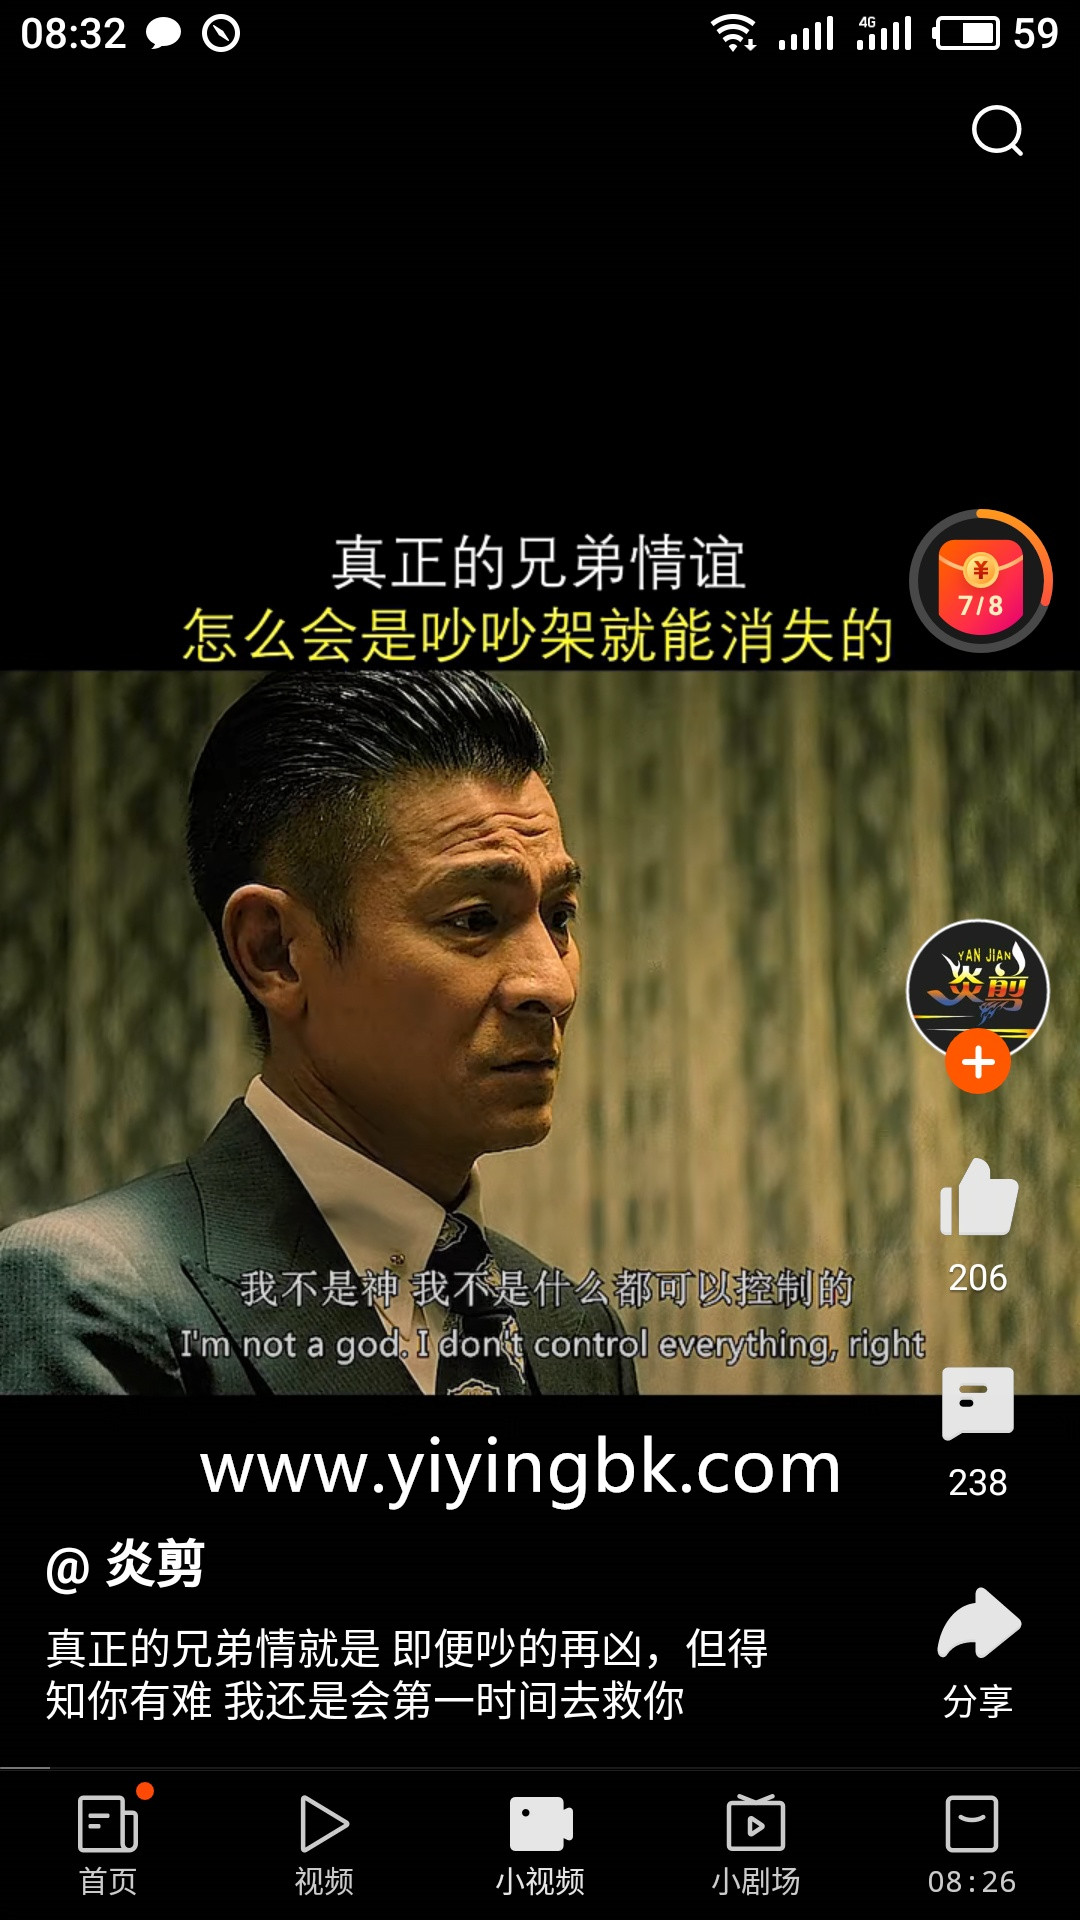 一边看小视频，一边领红包赚零花钱，www.yiyingbk.com